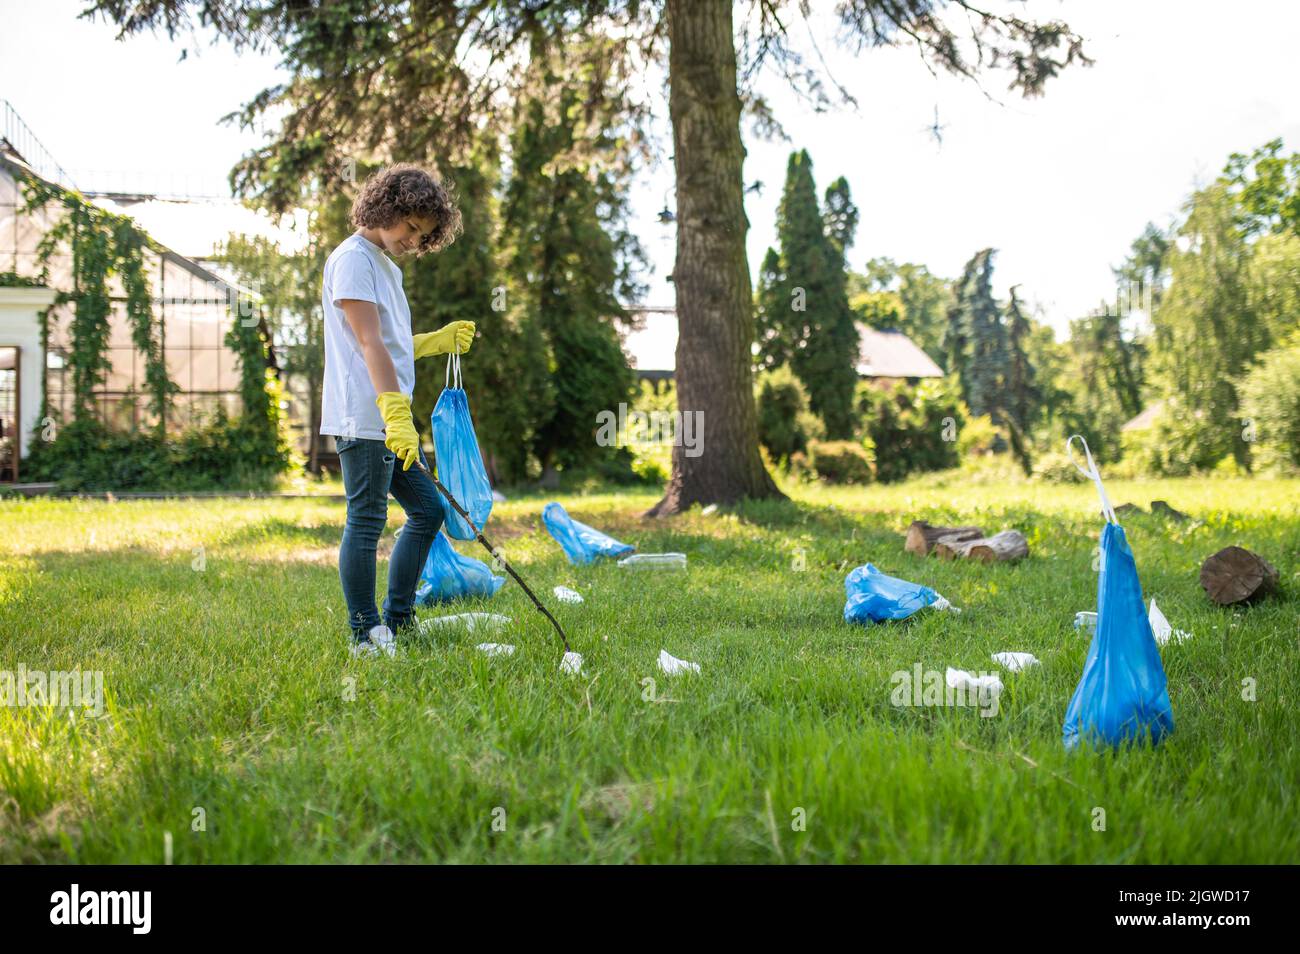 Carino giovane volontario pulizia del parco da rifiuti di plastica Foto Stock